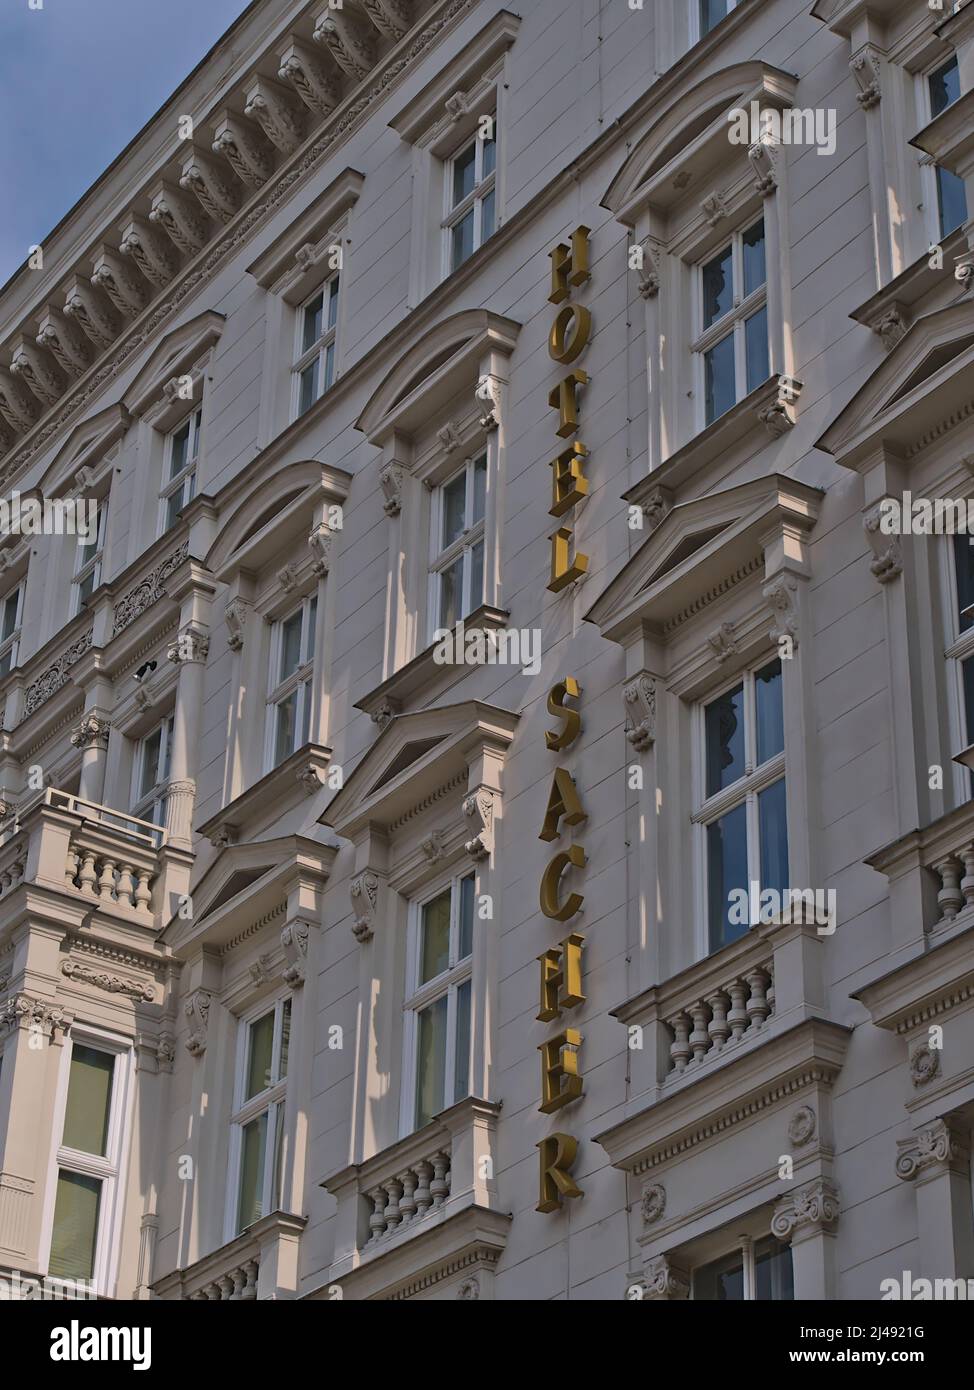 Vue à angle bas de la façade décorative du célèbre hôtel de luxe Sacher dans le centre historique de Vienne, Autriche avec lettrage. Banque D'Images